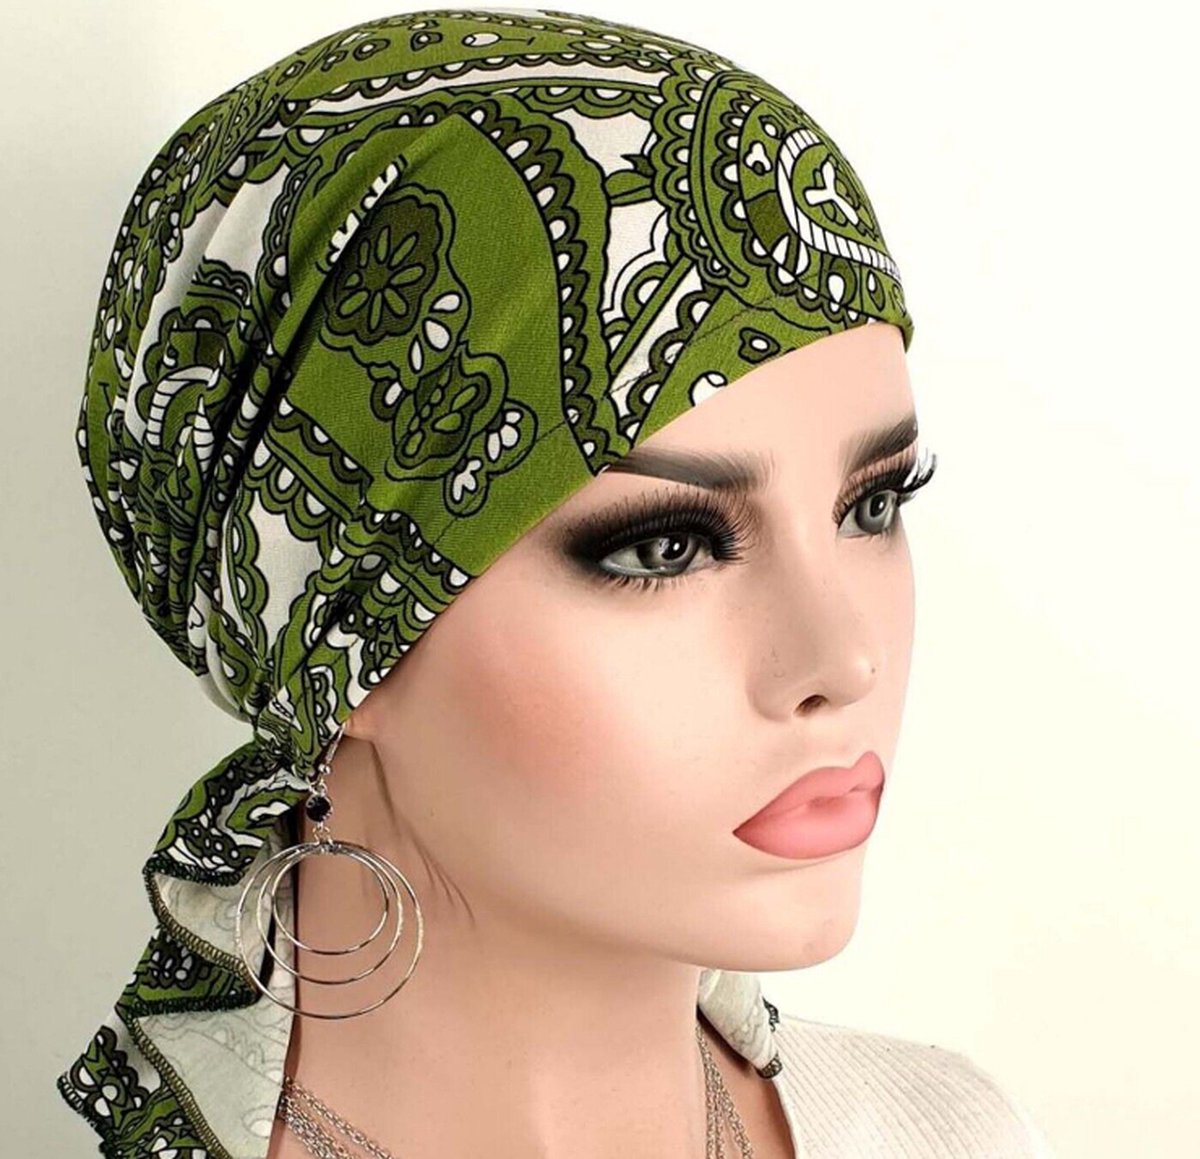 Bandana chemomuts hoofddoek voor haarverlies groen wit paisley print